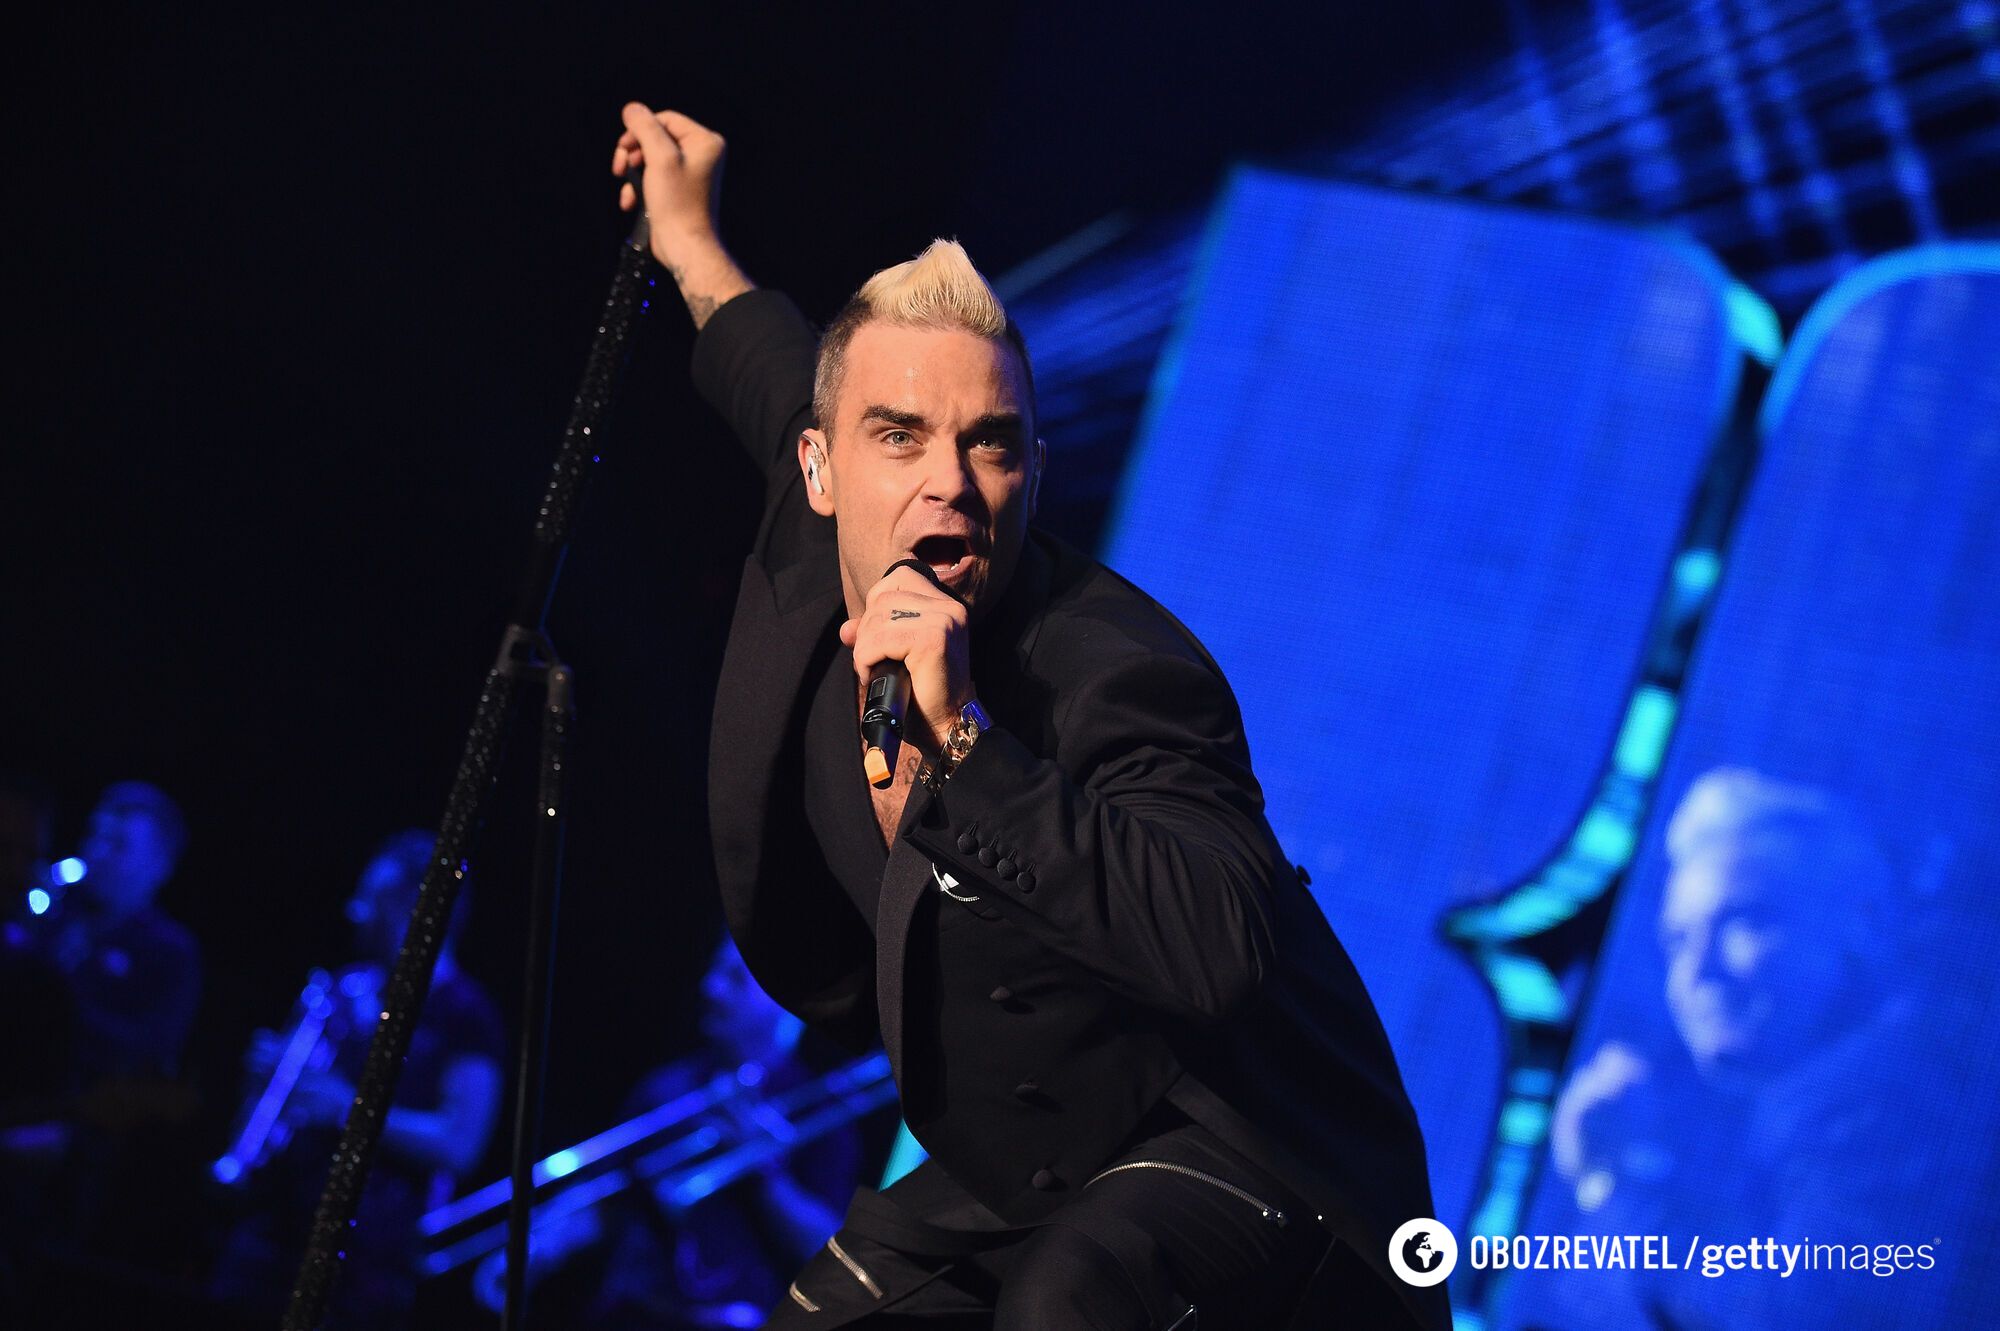 Druga śmierć w tym tygodniu: po koncercie Robbiego Williamsa zmarła 70-letnia fanka